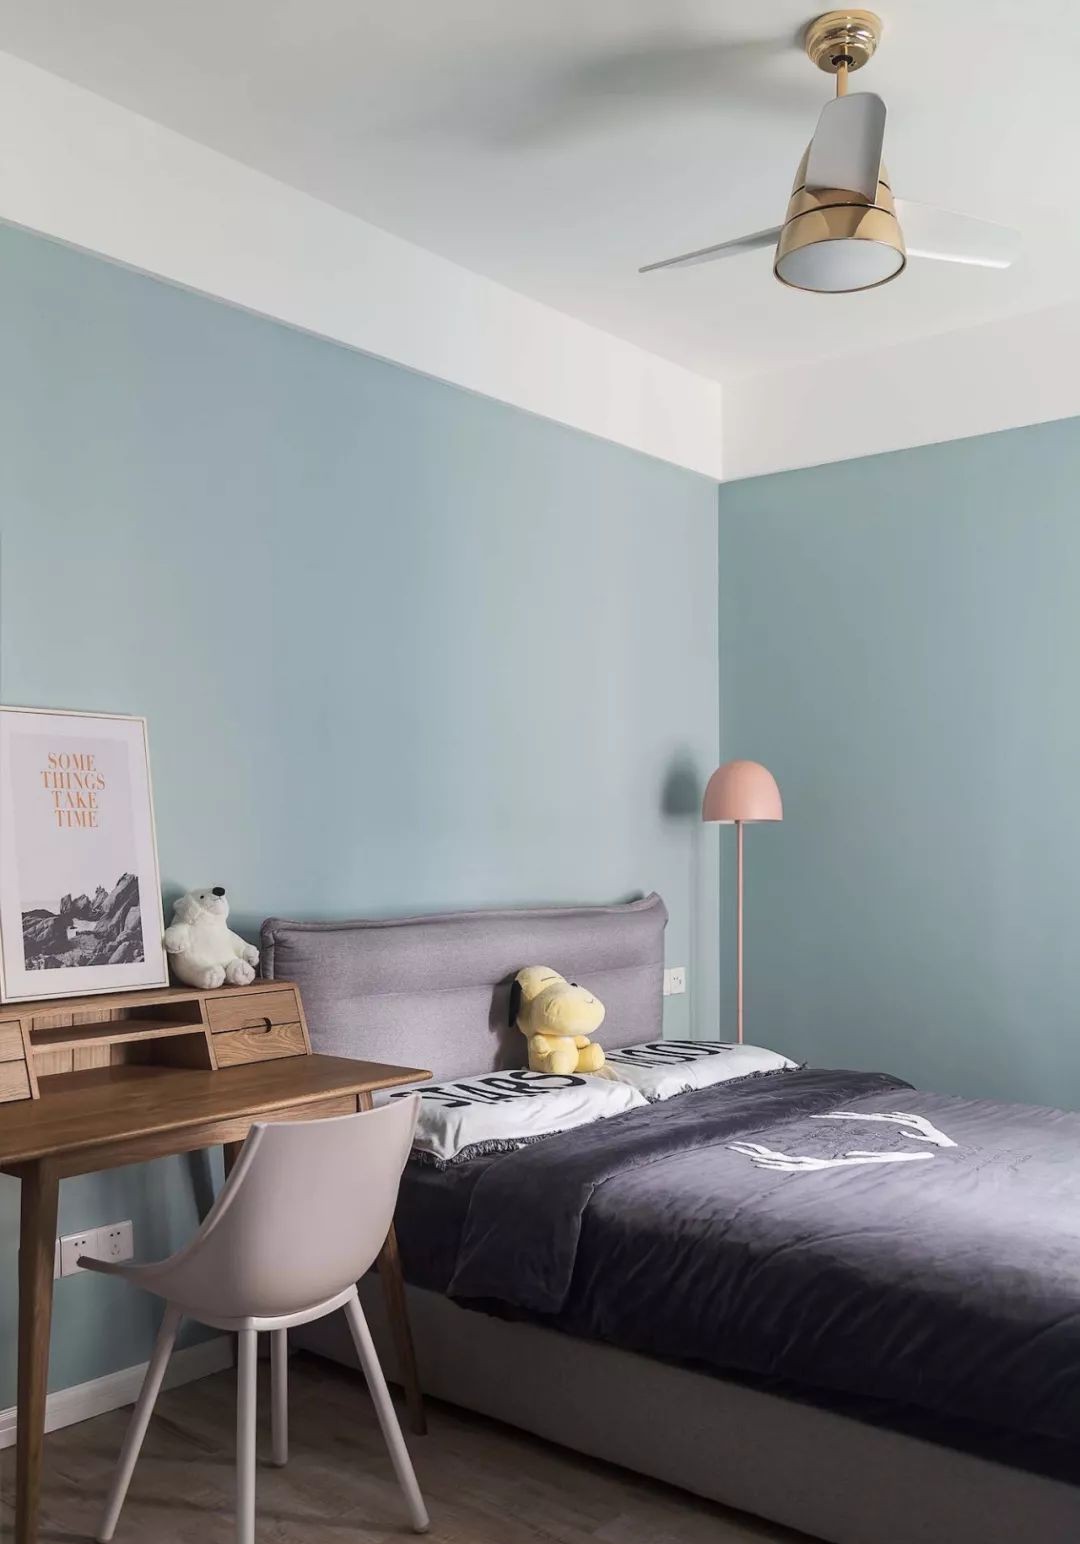 儿童房空间不大,通过采用浅蓝色乳胶漆墙面,让空间显得清新自然,不